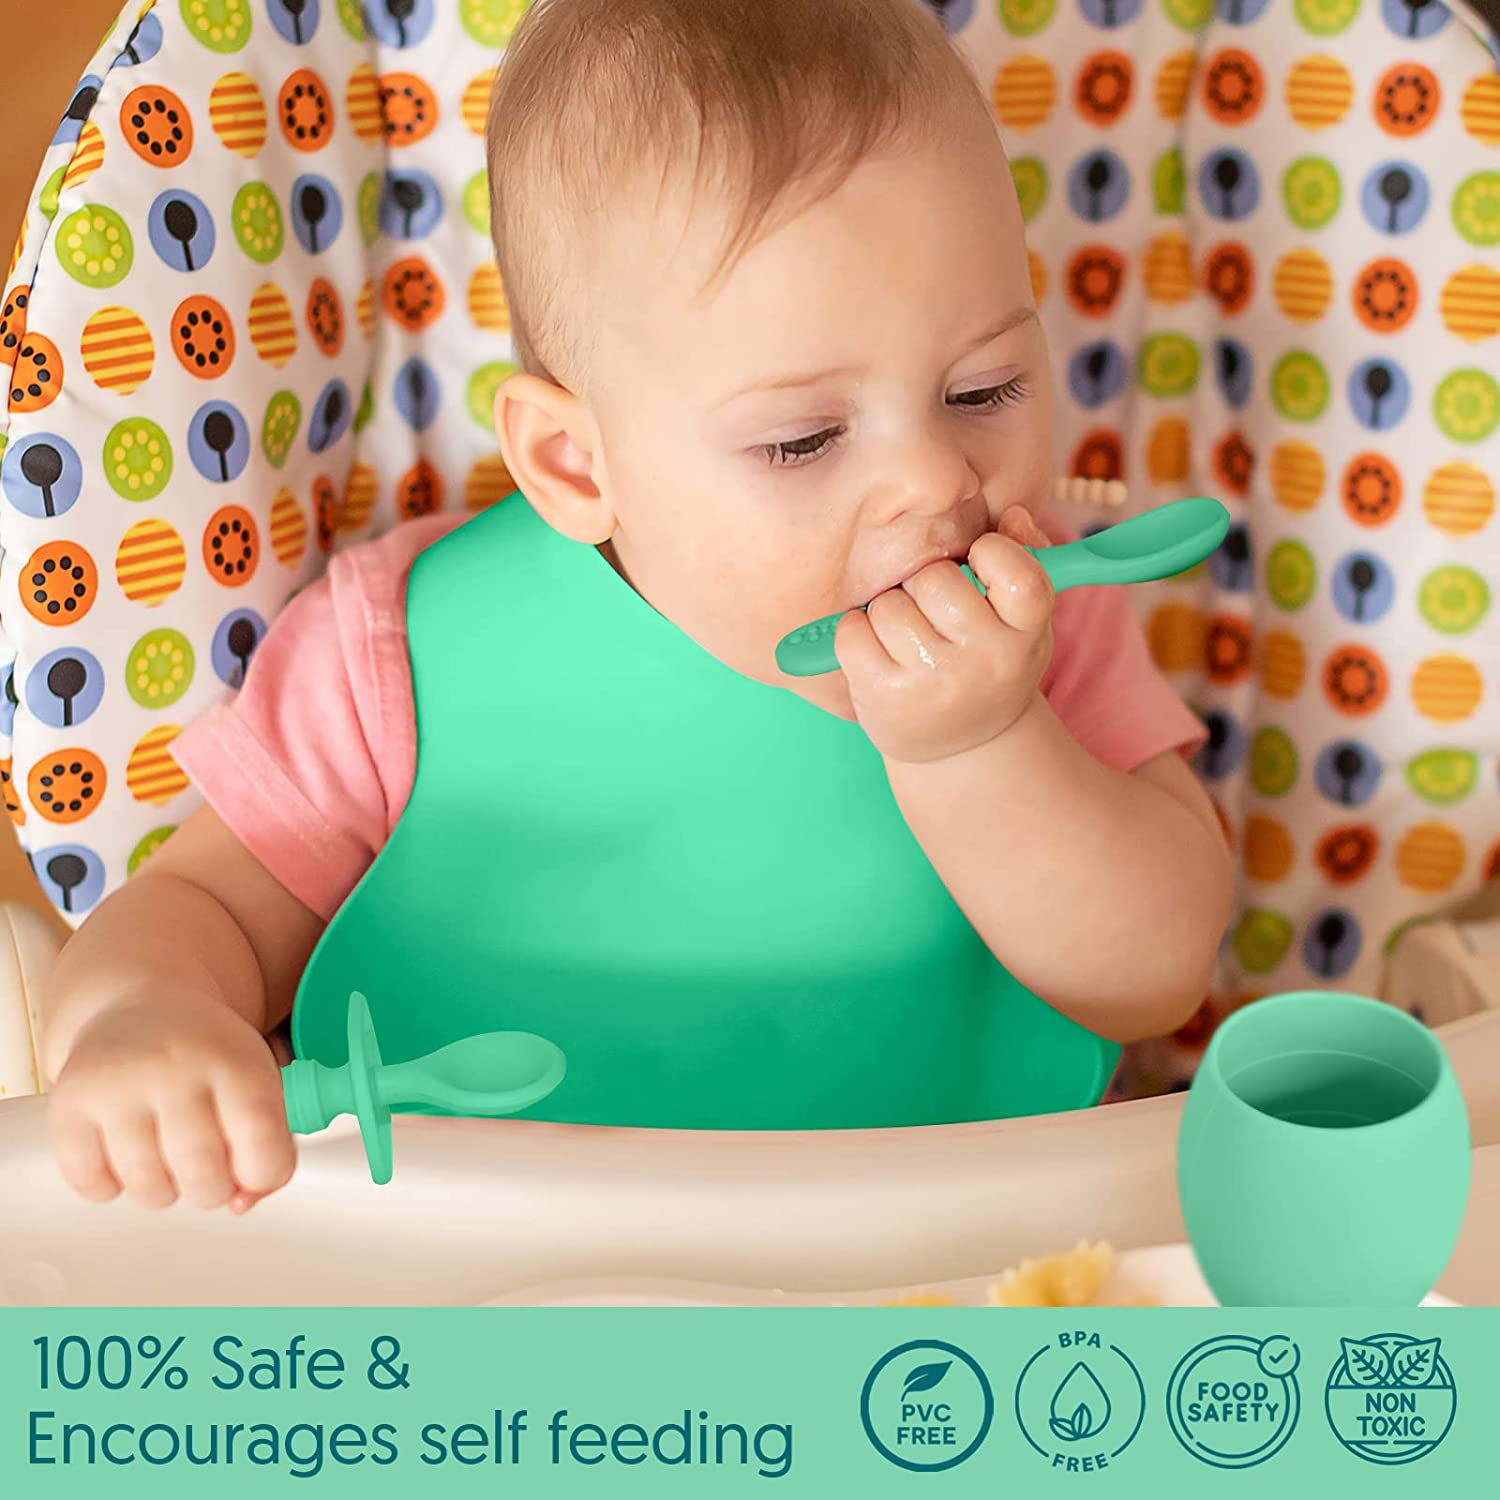 Baby Silicone Feeding Set - Baby Led Weaning Utensils, Silicone